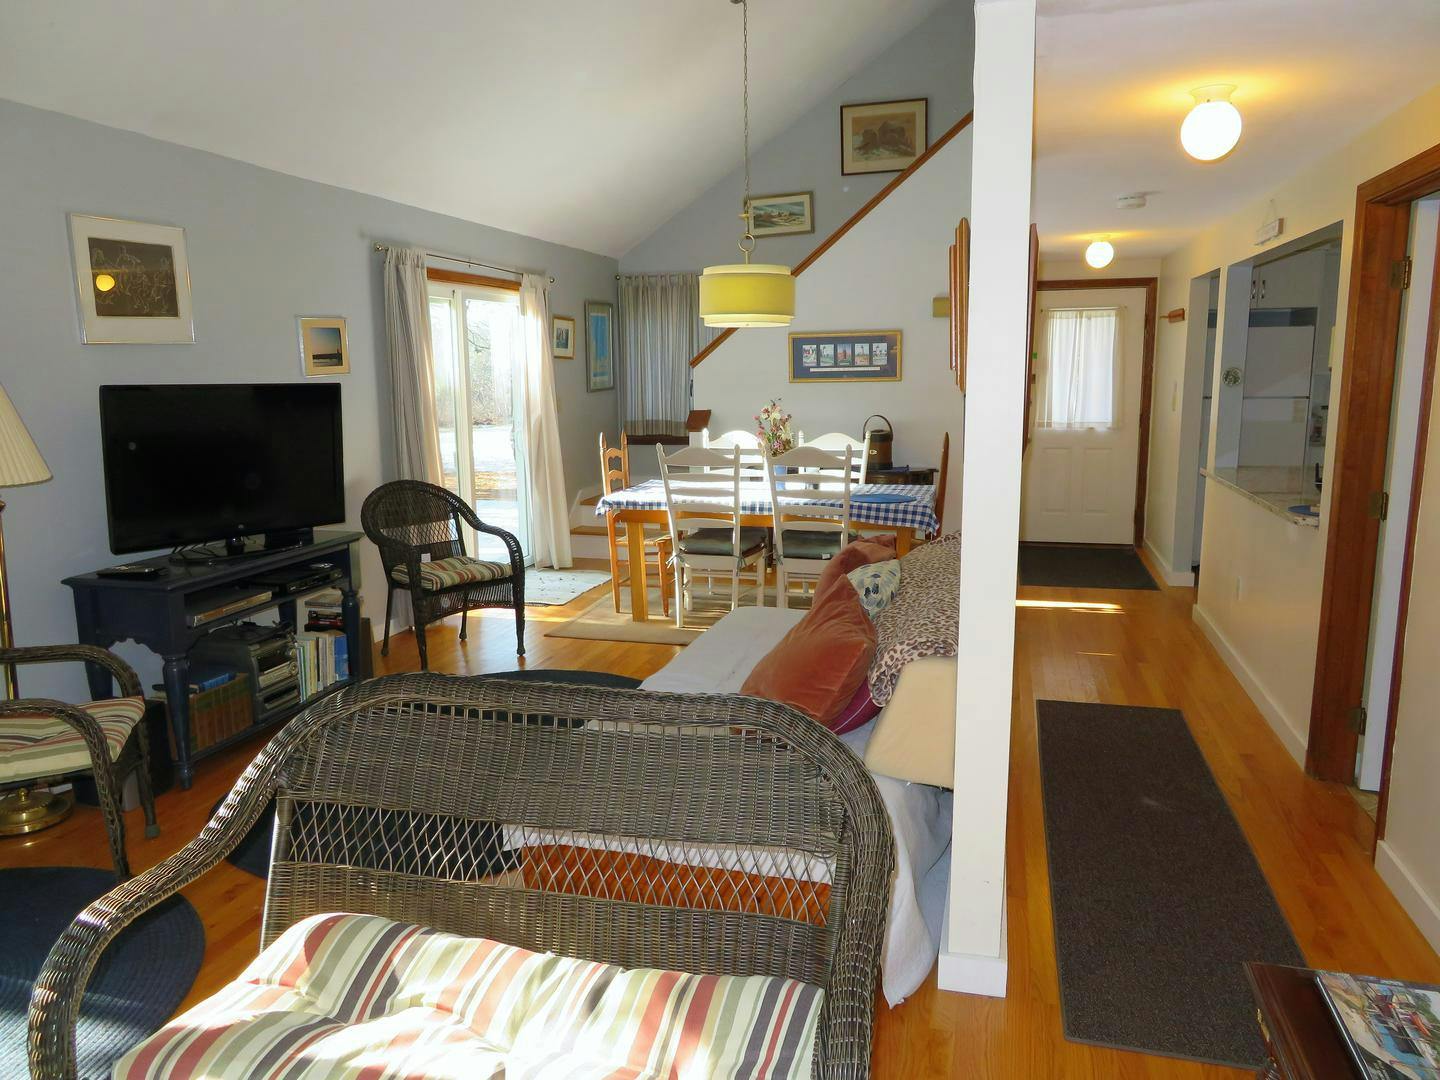 Image 3 - 3 Bedroom Rental in Edgartown, Katama - Sleeps 8